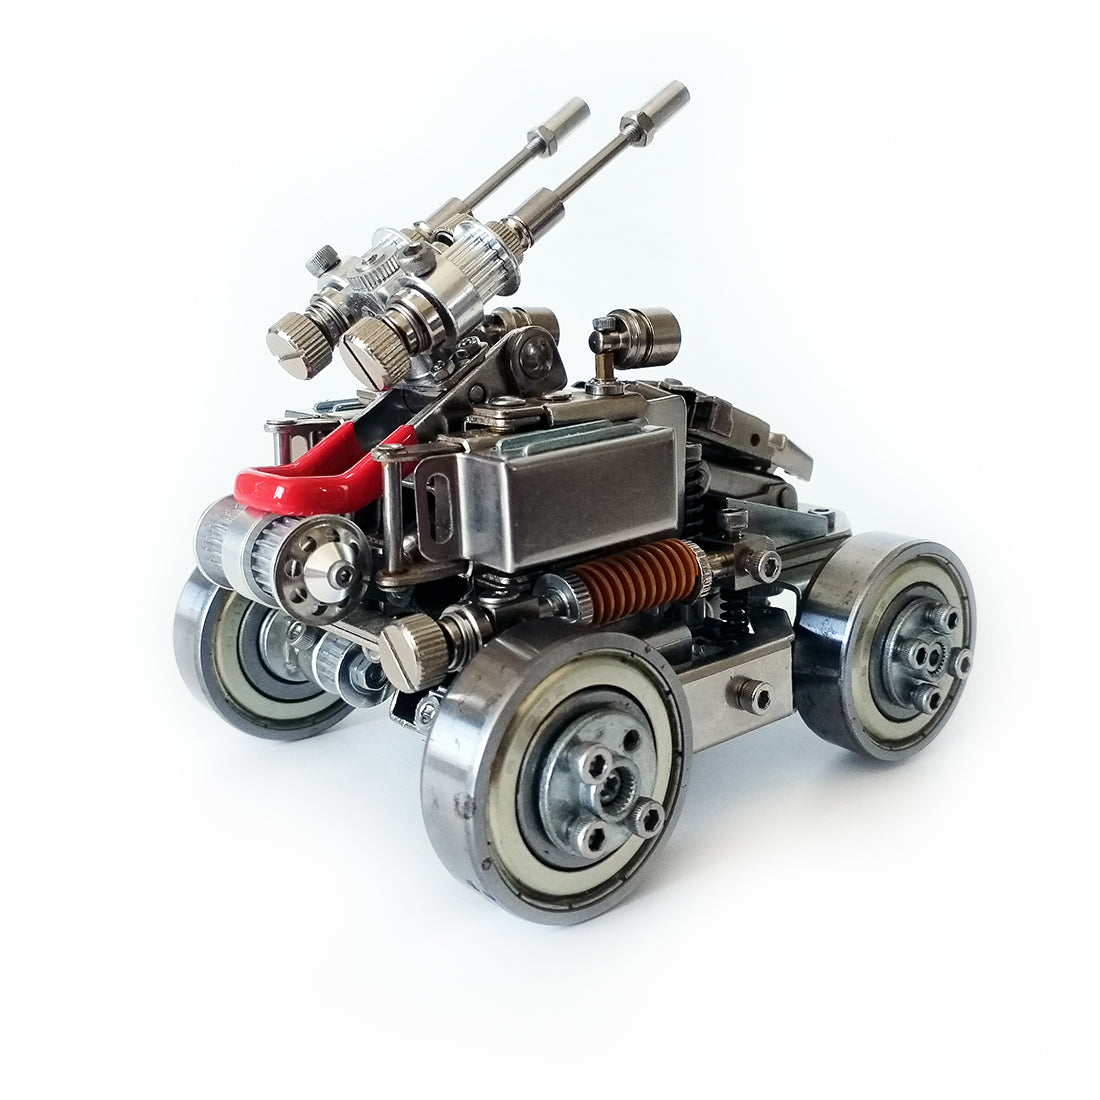 3D Metal Puzzle Mechanical Combat Vehicle Punk Assembly Model 400+PCS